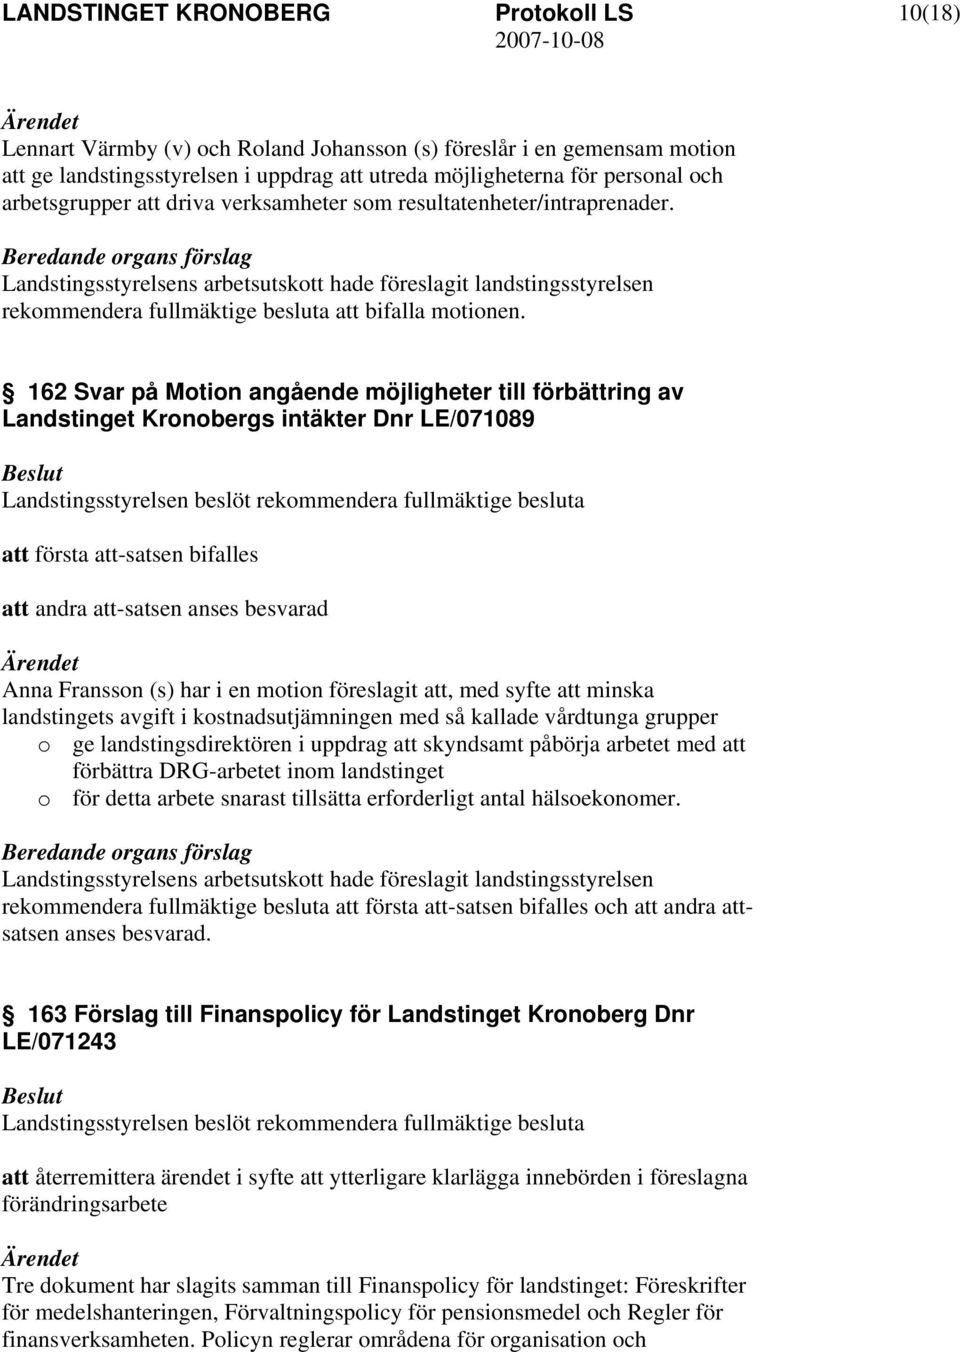 162 Svar på Motion angående möjligheter till förbättring av Landstinget Kronobergs intäkter Dnr LE/071089 rekommendera fullmäktige besluta att första att-satsen bifalles att andra att-satsen anses